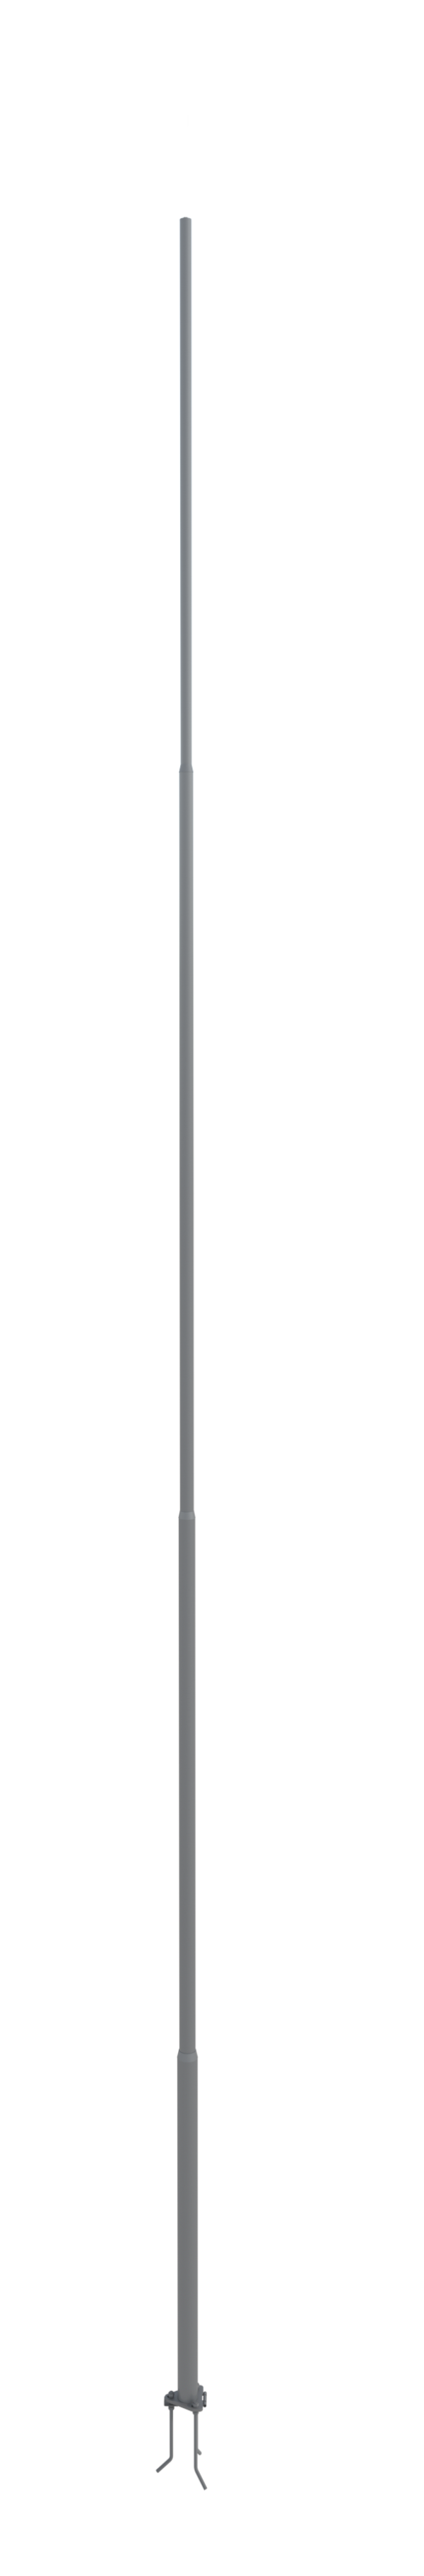 NordWerk МСАА-11 — Молниеотвод высотой 11 метров для активных молниеприемников (алюминий)